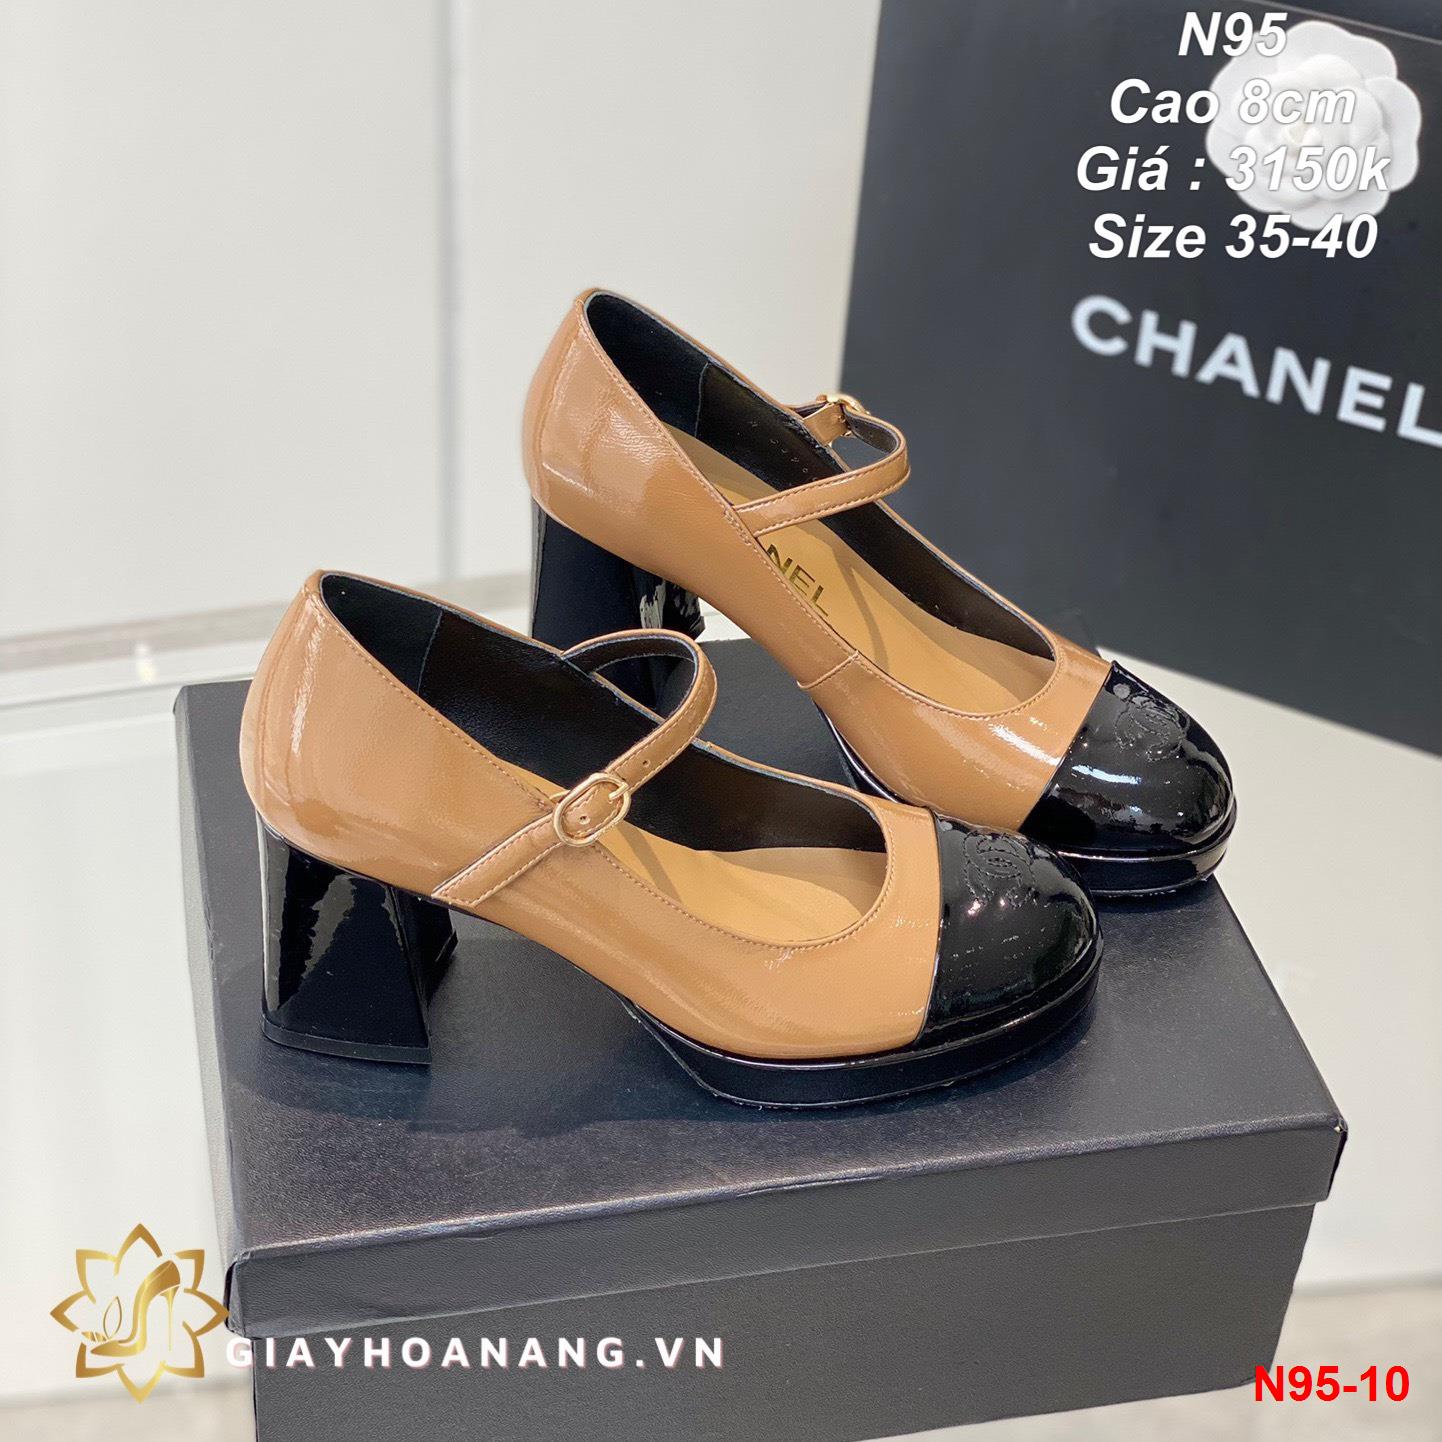 N95-10 Chanel giày cao 8cm siêu cấp